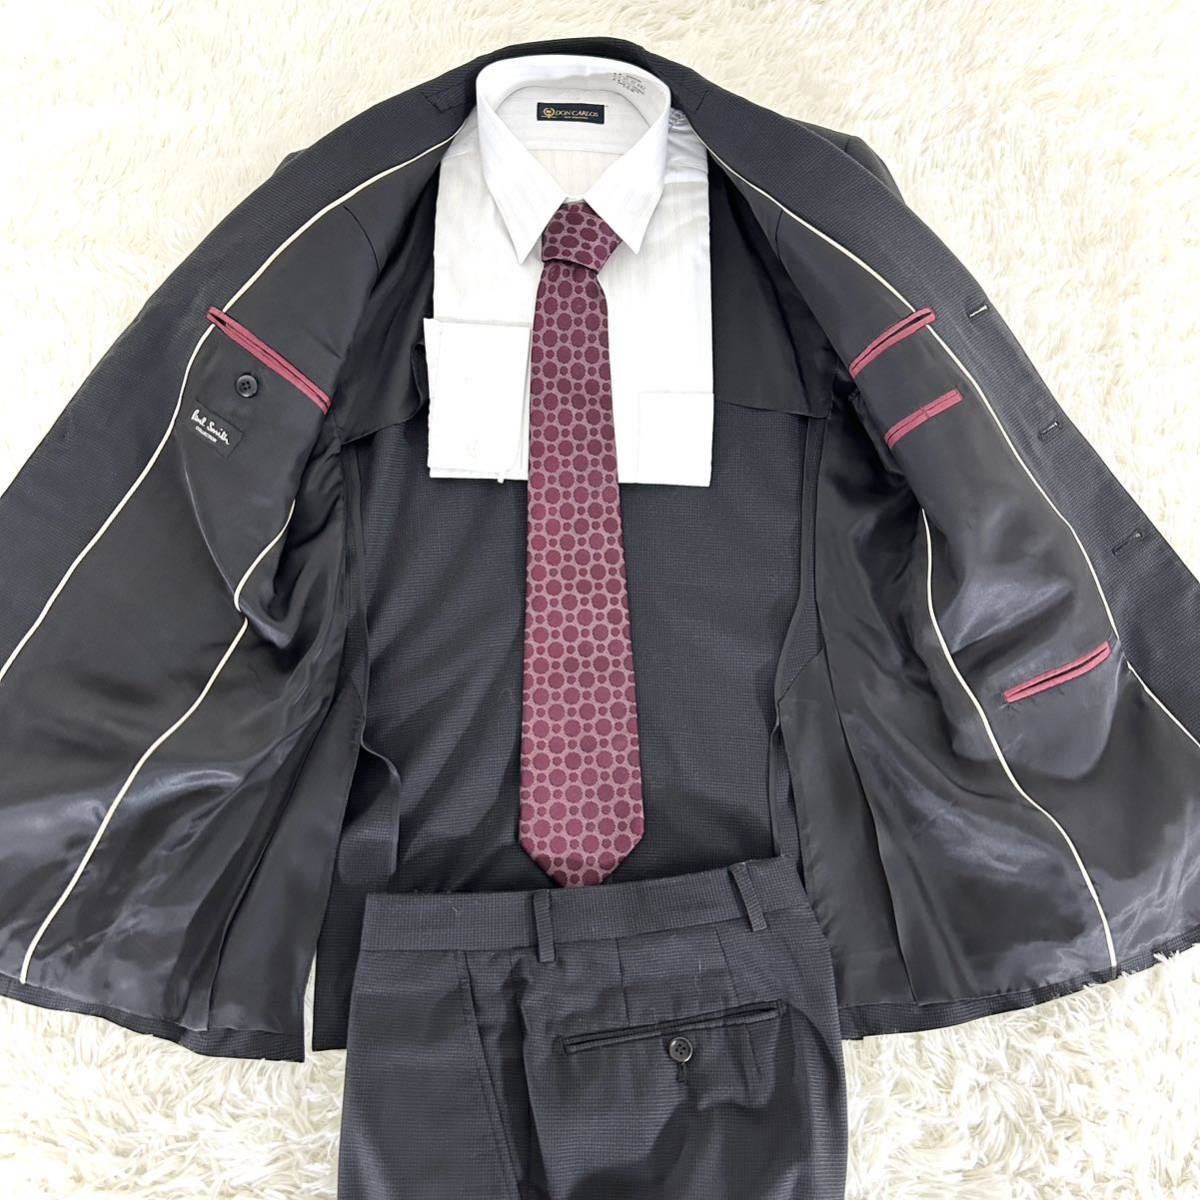 【Mサイズ】Paul Smith COLLECTION ポールスミス コレクション スーツ セットアップ ブラック 黒 スモールチェック柄_画像3